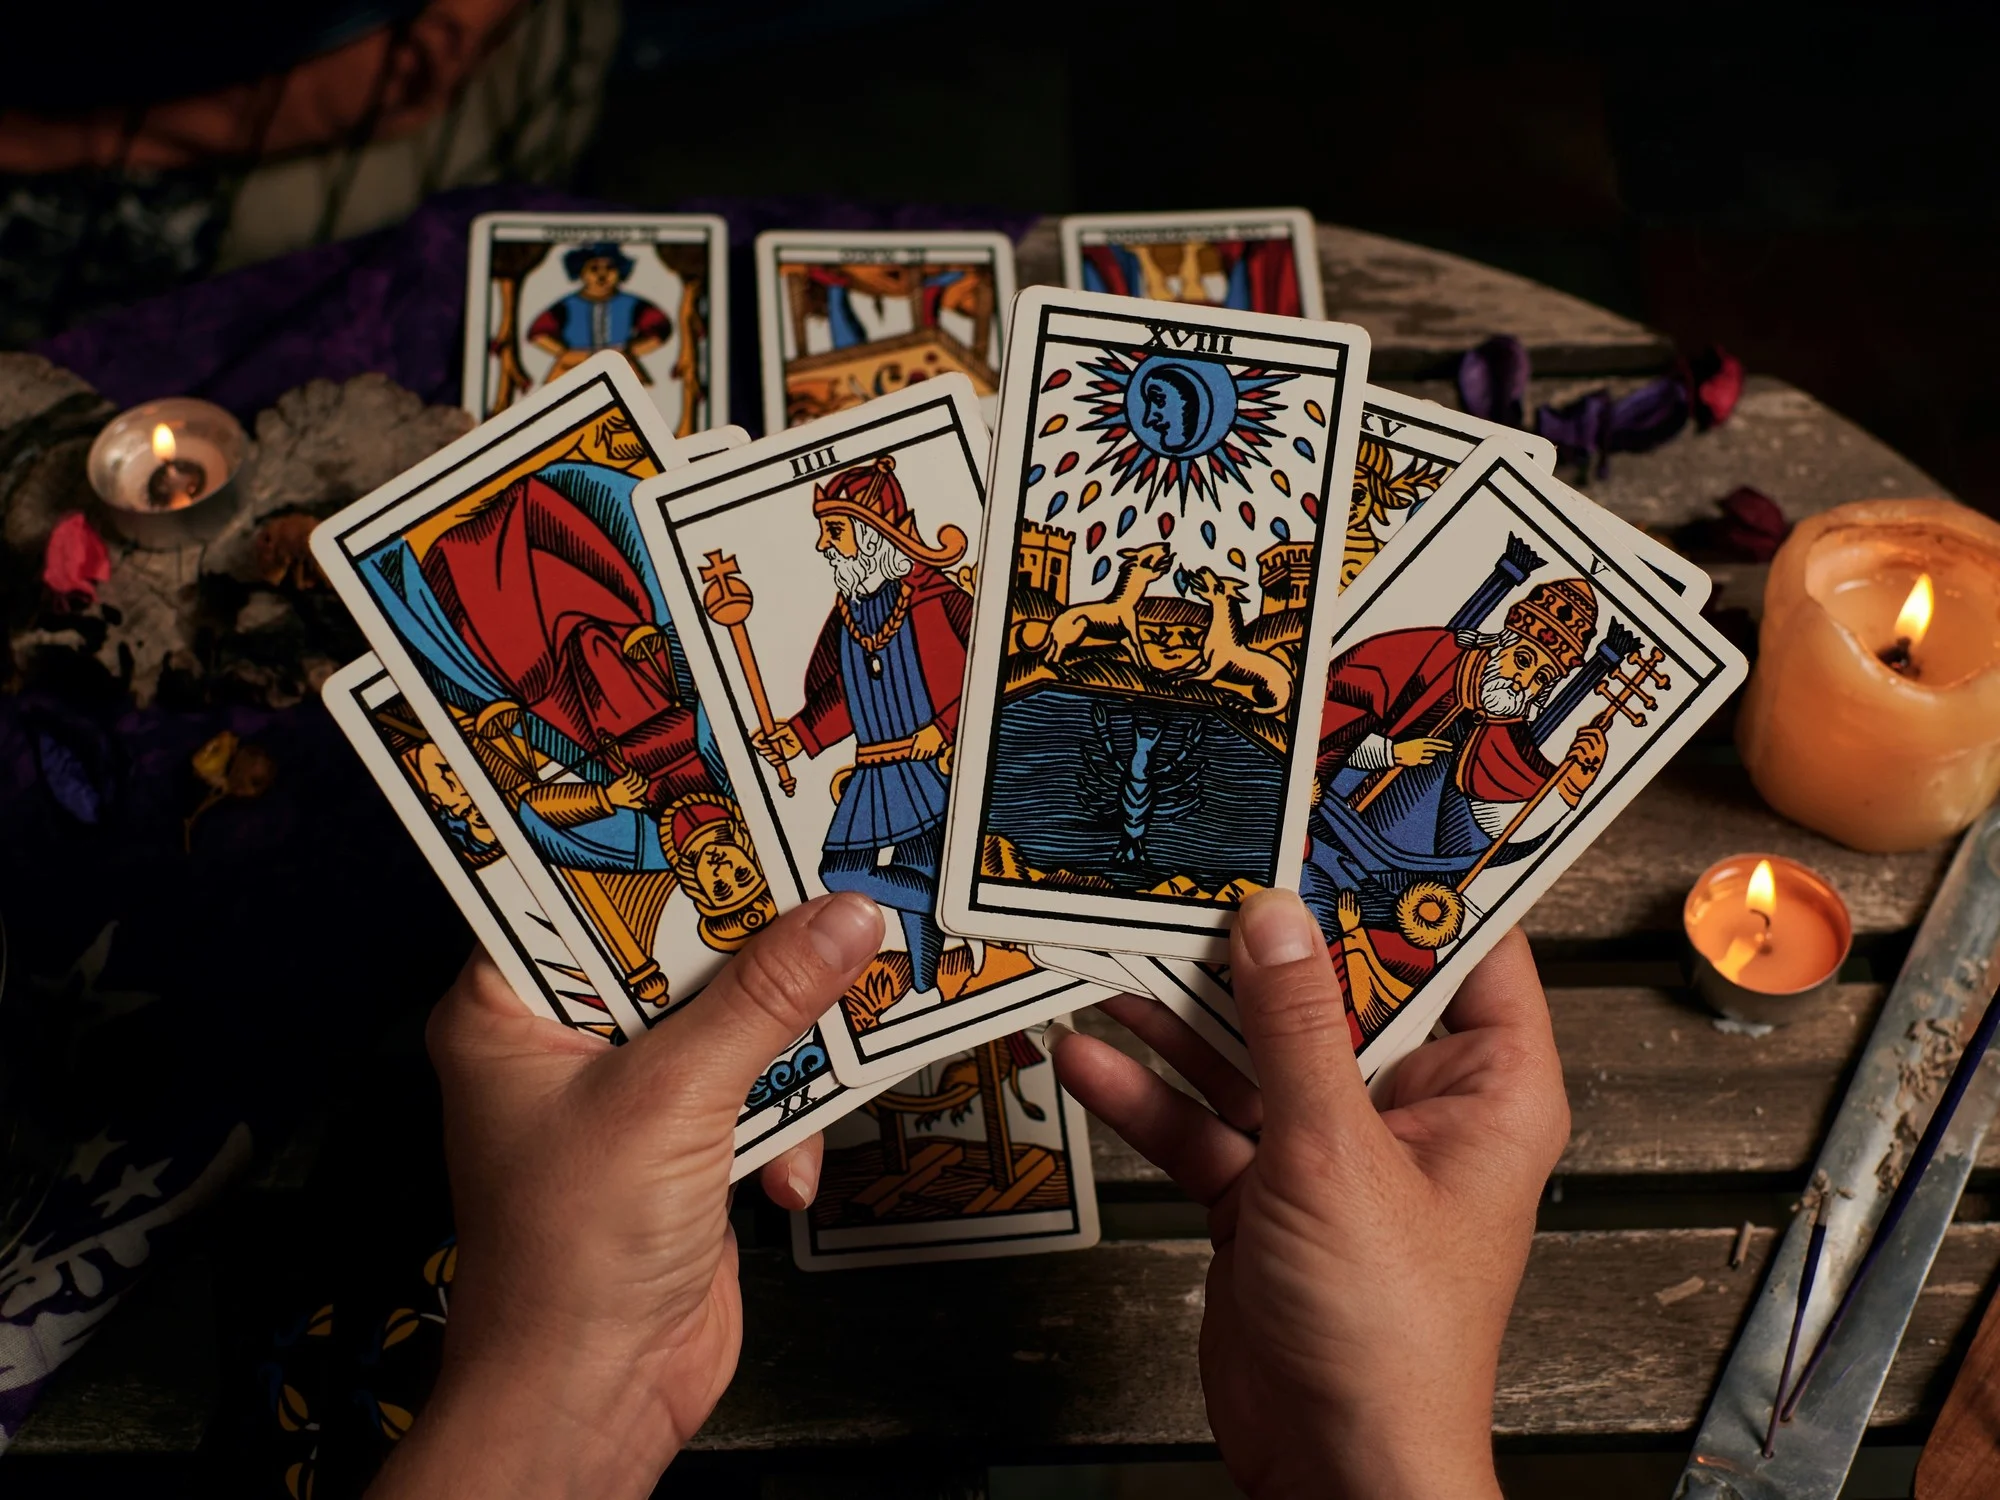  ¿Qué tan confiables son las lecturas de cartas del tarot?
 